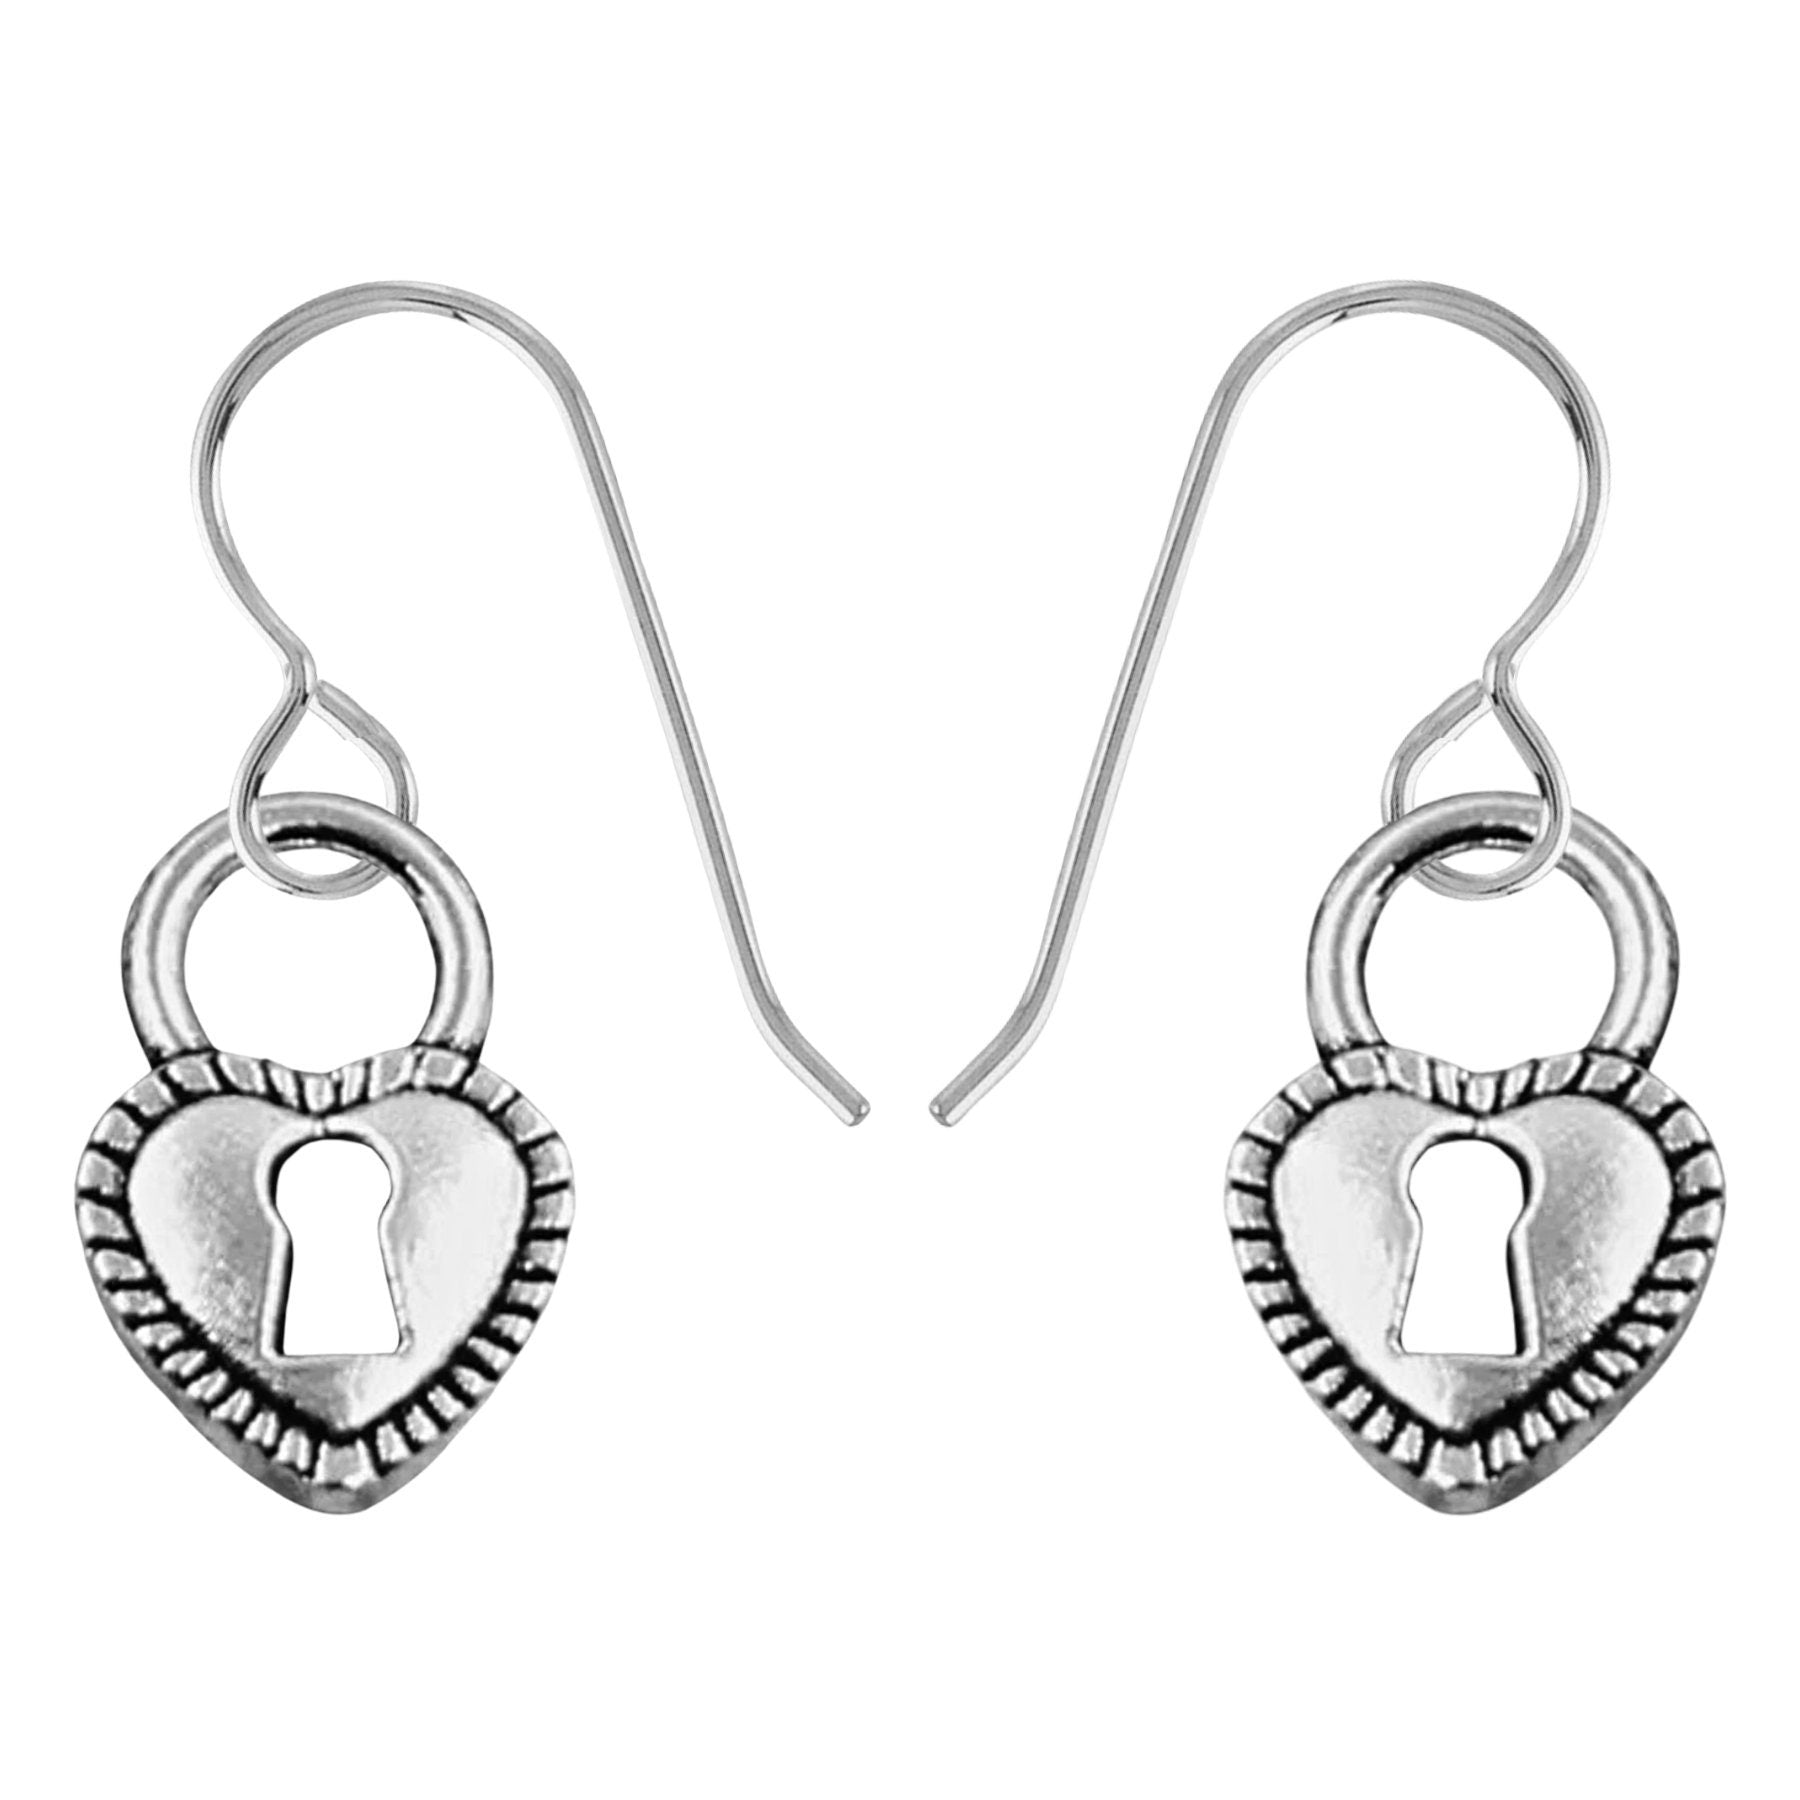 Key Hole Locket Heart Dangle Earrings - Melanie Golden Jewelry - dangle earrings, drop earrings, earrings, love, motherhood, VALENTINES